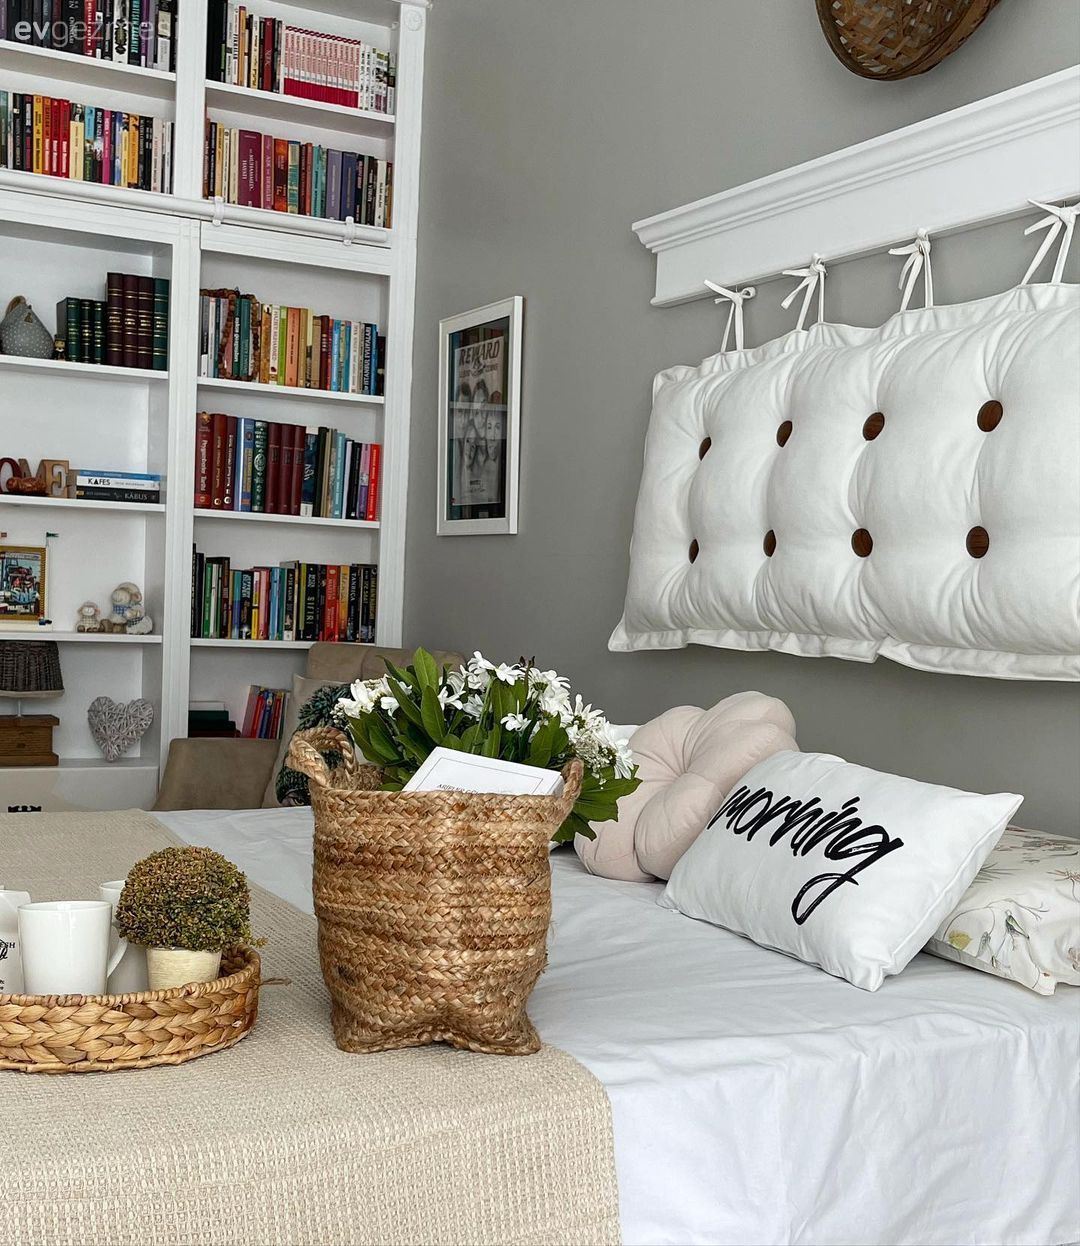 Romantik Ruhlu Bu Yatak Odasında İşlevsel Tasarımlar Ön Planda! Ev